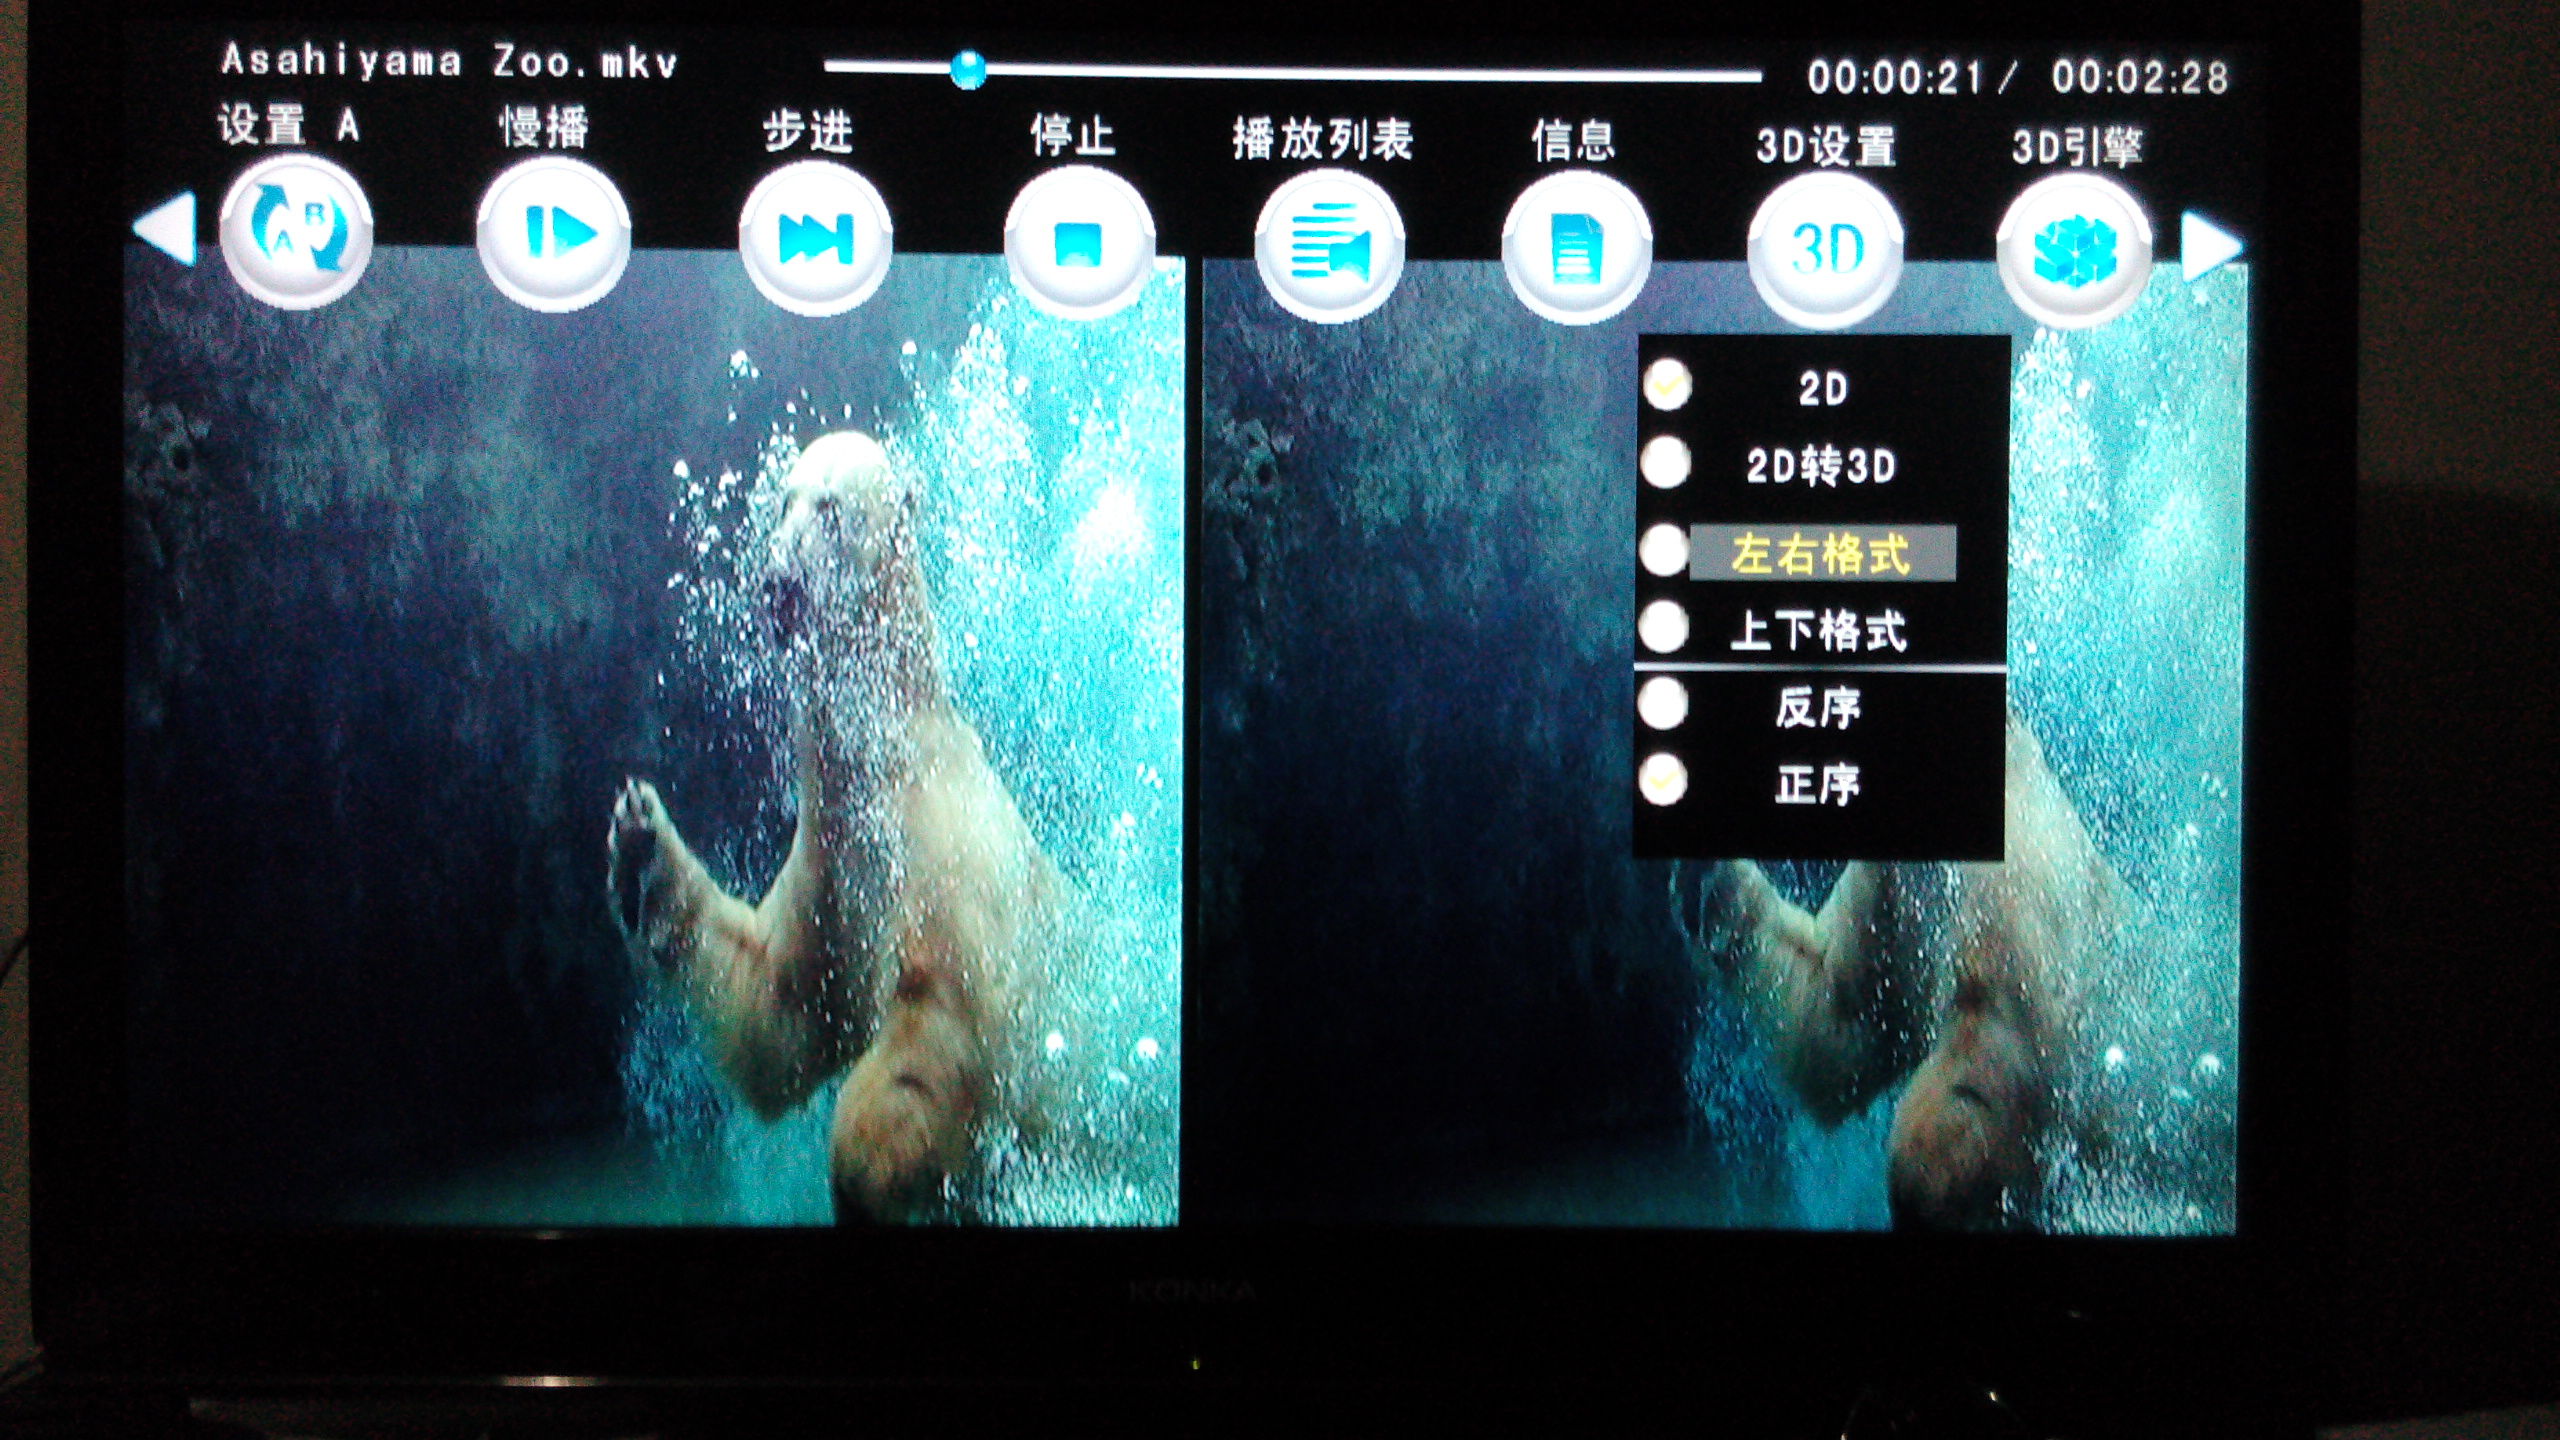 在支持3d的电视机上,播放3d左右格式的影片,屏幕显示为左,右两幅画面.